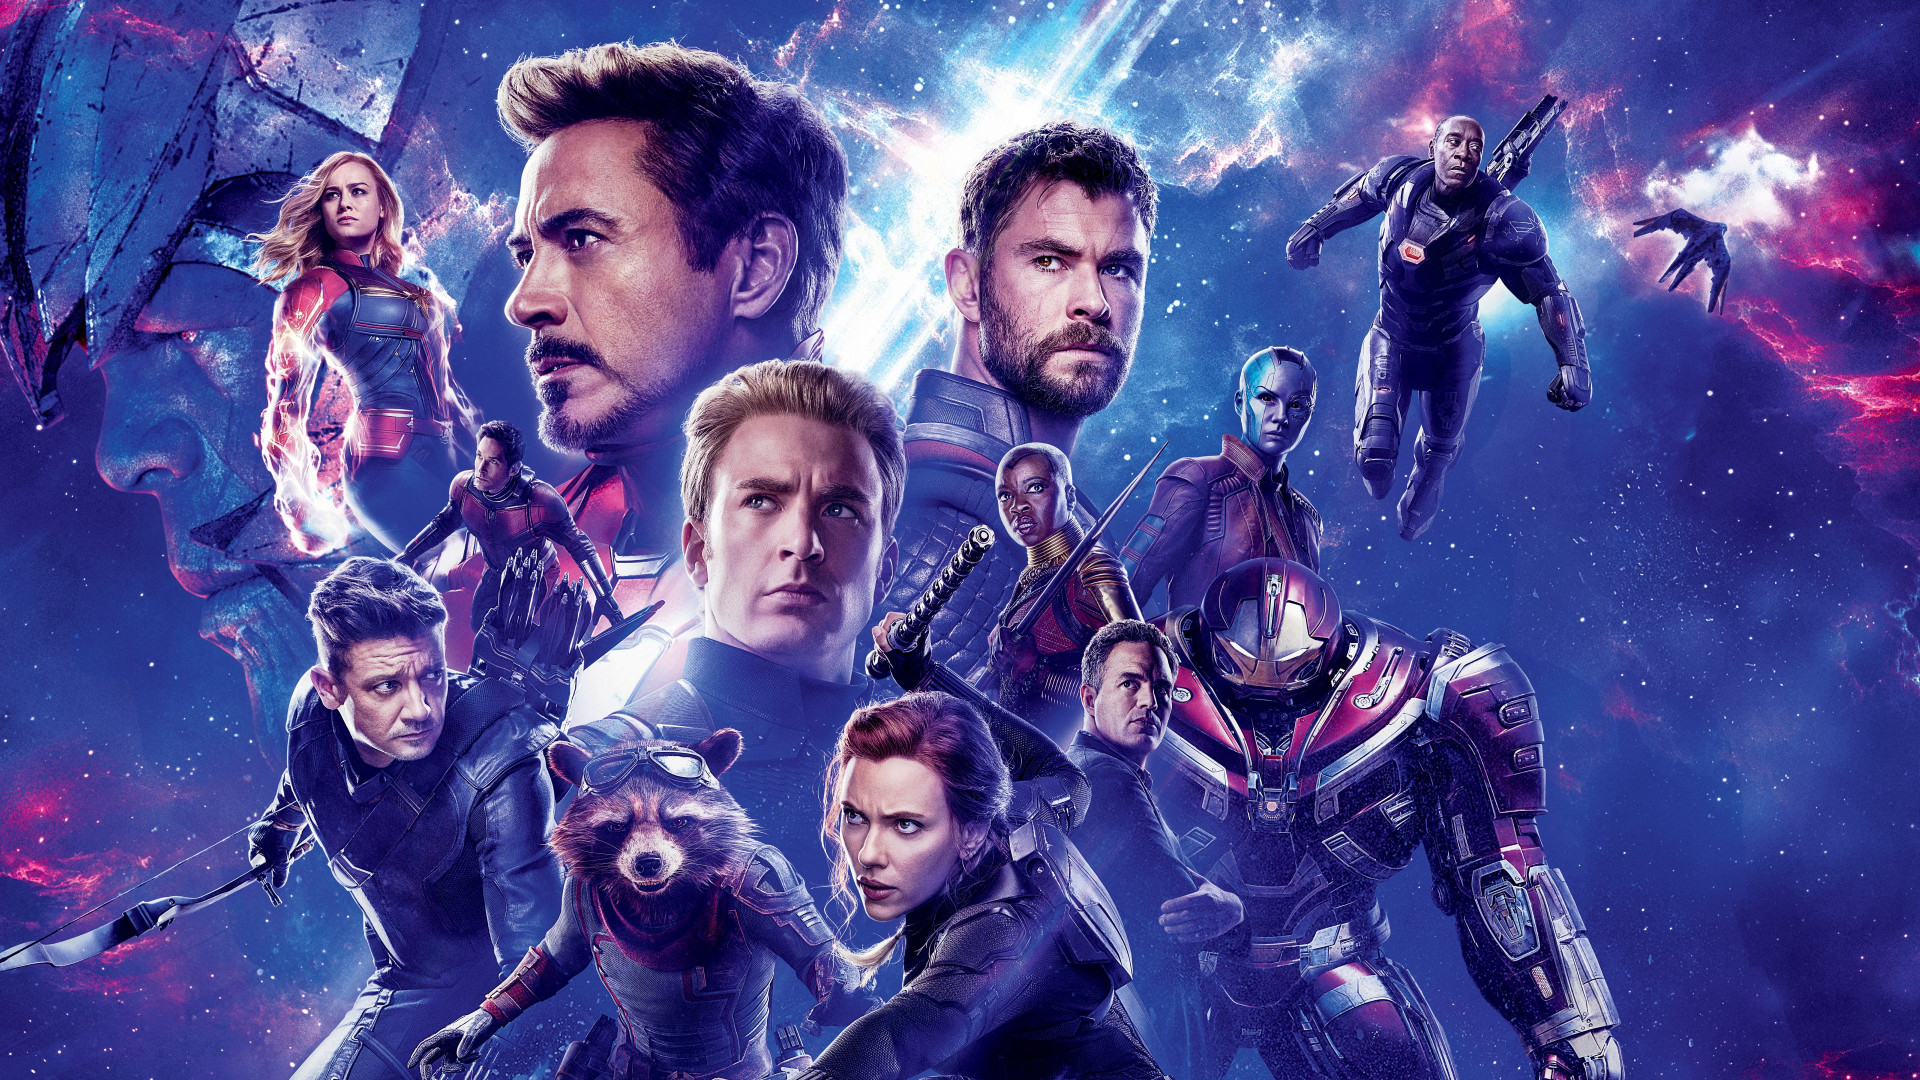 Avengers: Endgame là bộ phim được mong chờ nhất năm 2019 với cốt truyện hấp dẫn và hình ảnh tuyệt đẹp. Với độ phân giải 1366x768, tải hình nền này sẽ cho bạn một khả năng tuyệt vời để cảm thấy mình như đang lọt vào thế giới của các siêu anh hùng. Hãy tải ngay hình nền này để trải nghiệm một cách đầy hứng khởi nhé!